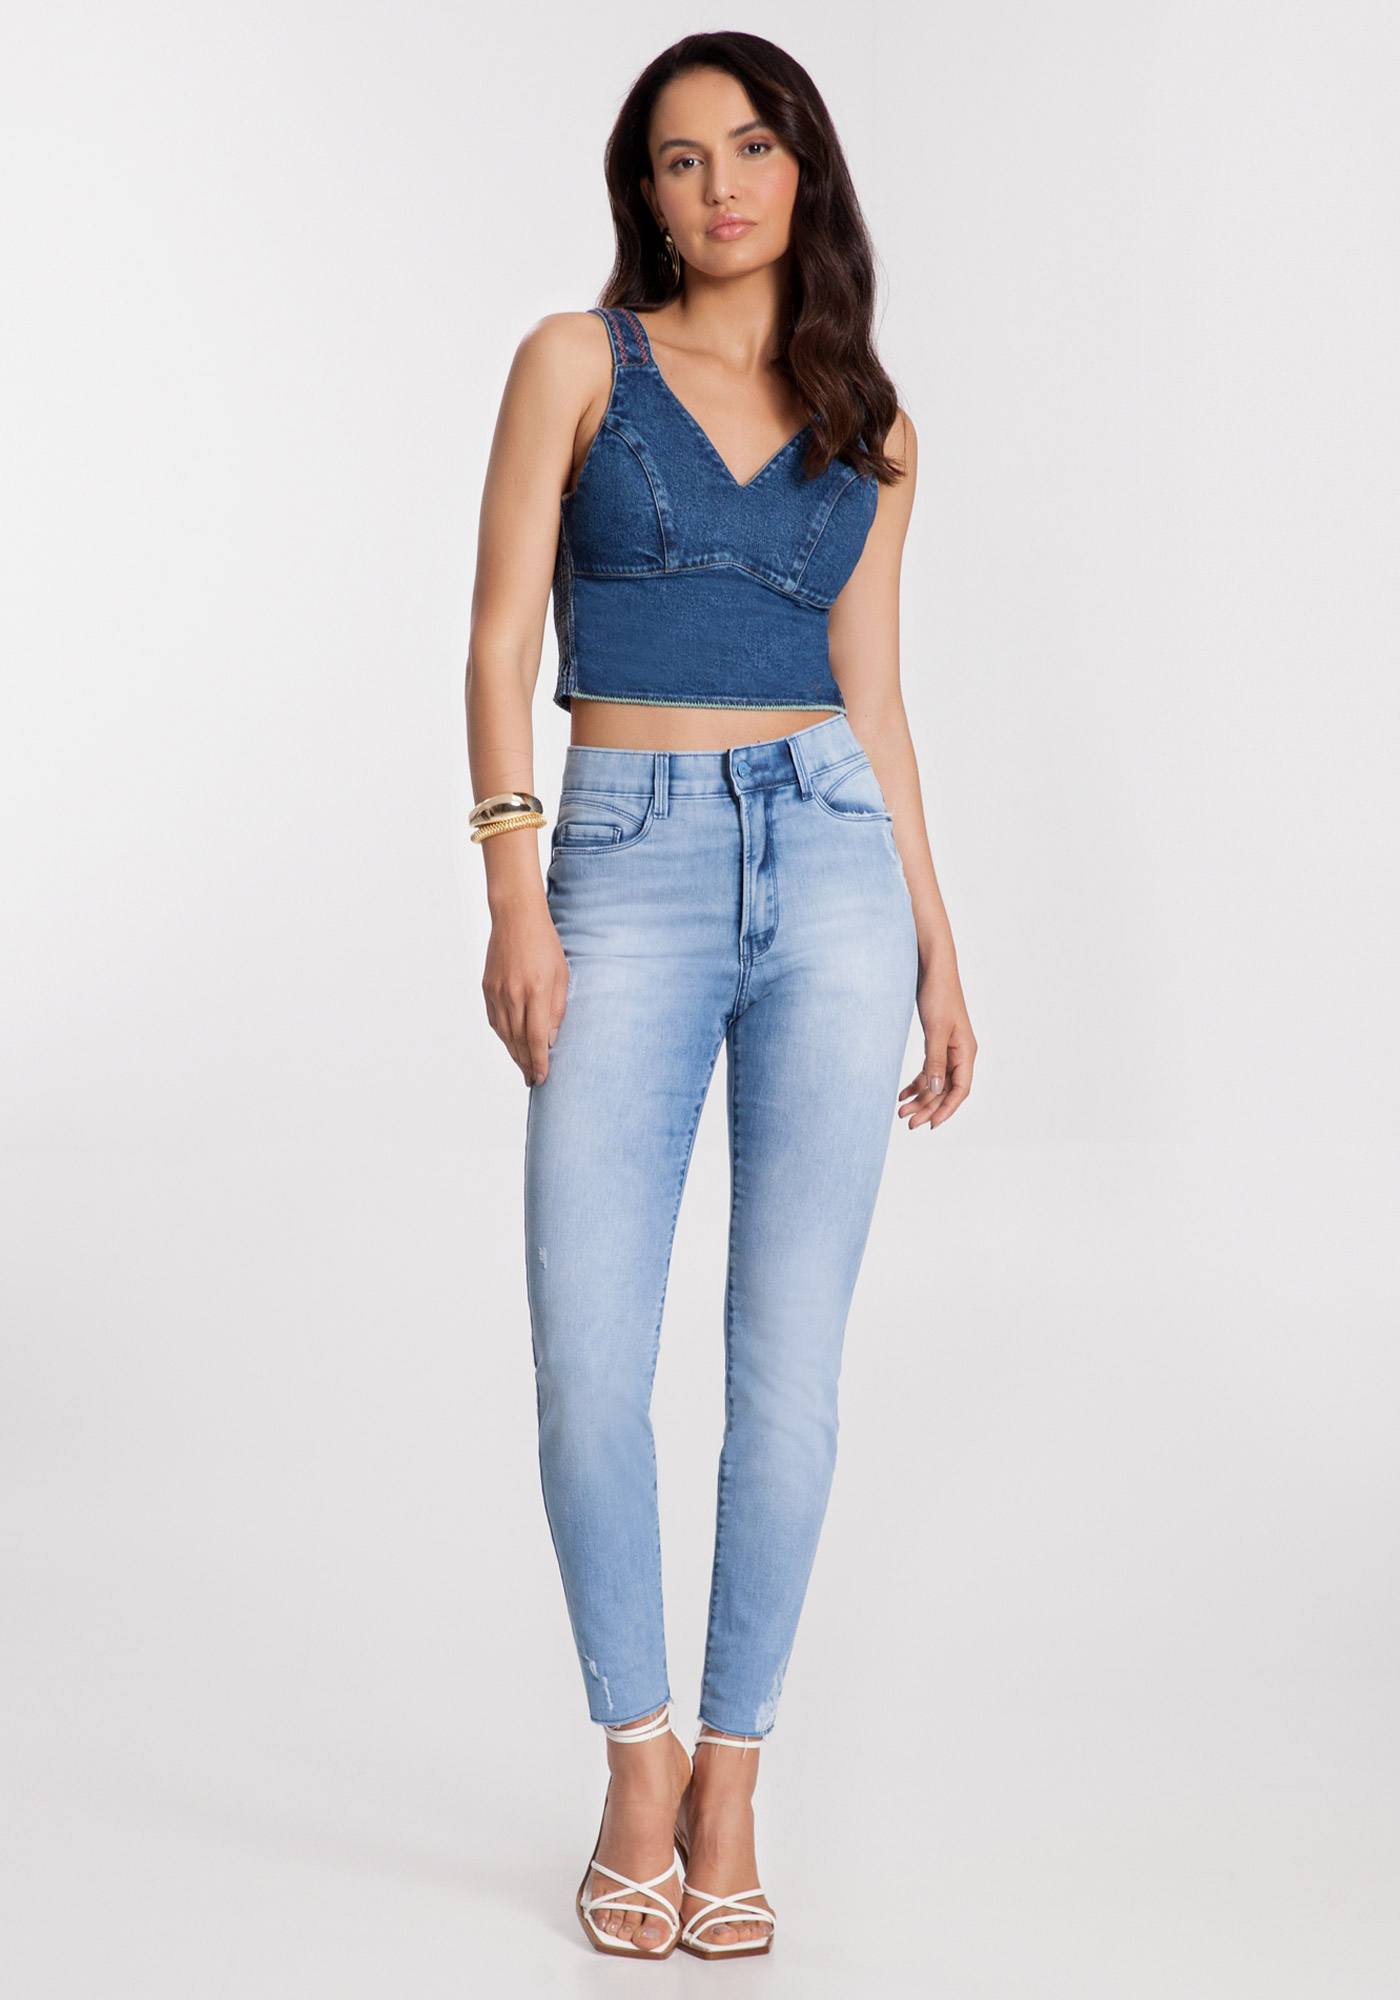 Comprar Calça Jeans Chapa Barriga Cinta Modeladora Preta Skinny